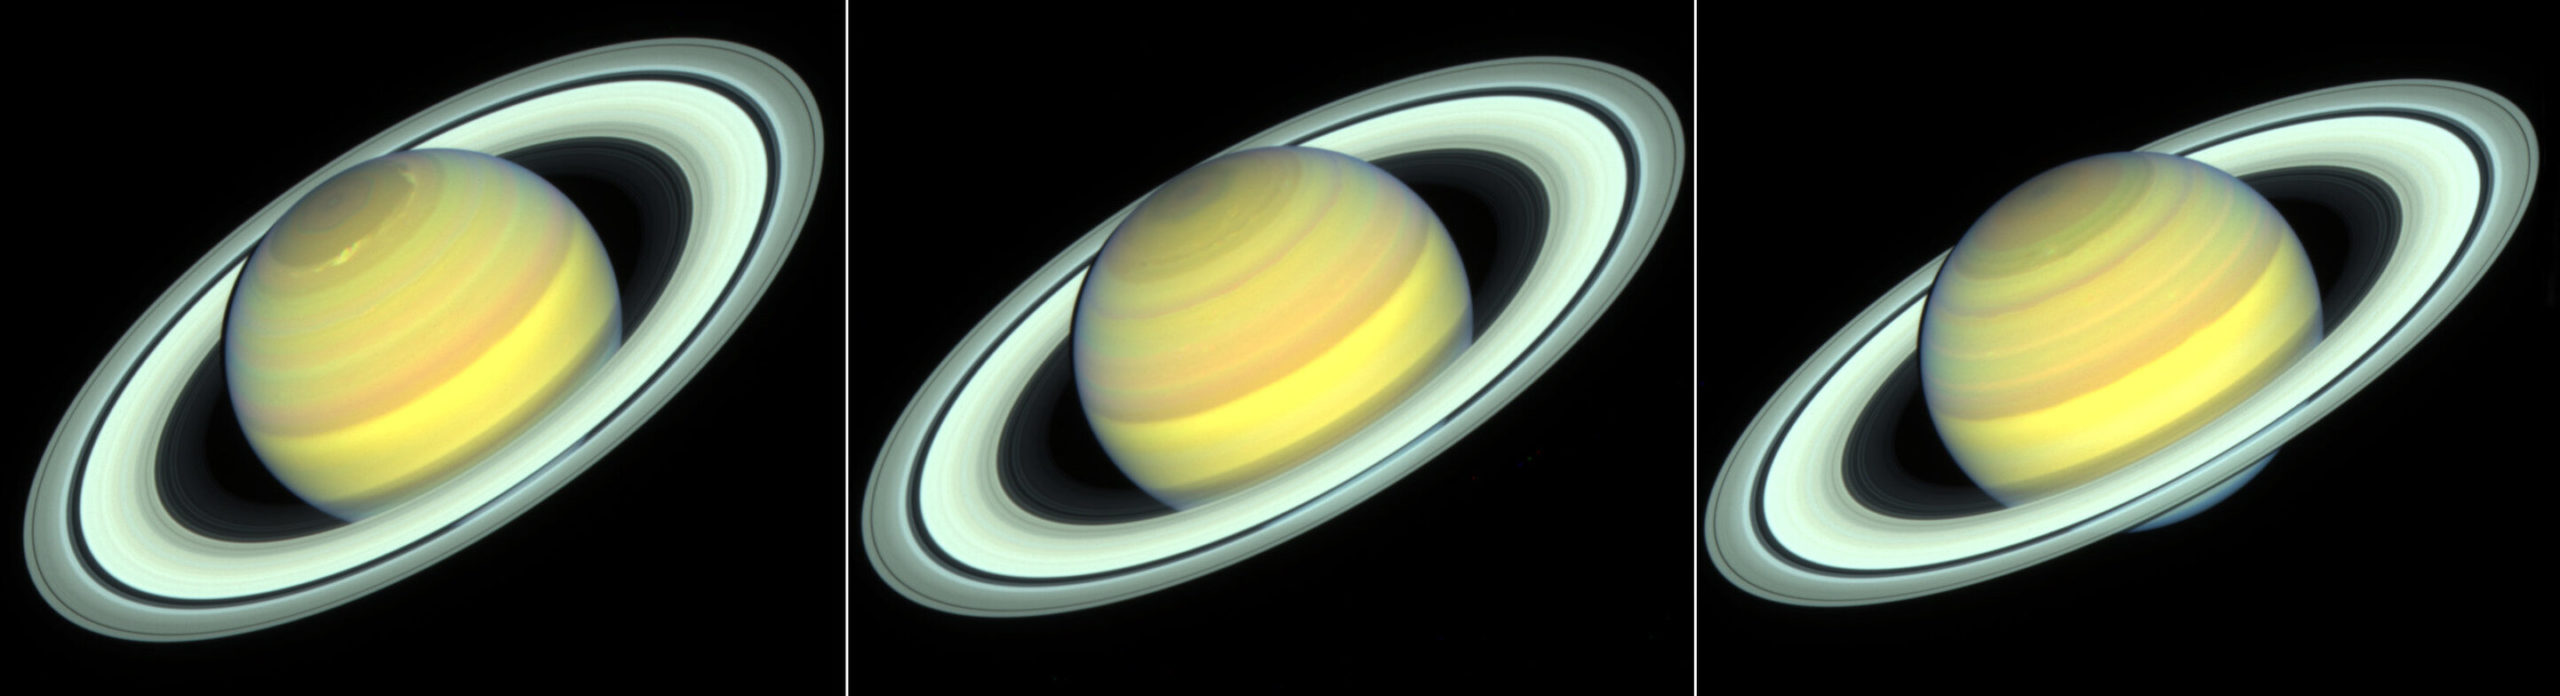 ハッブルは土星の季節がどのように変化するかを示しています Geektech Online